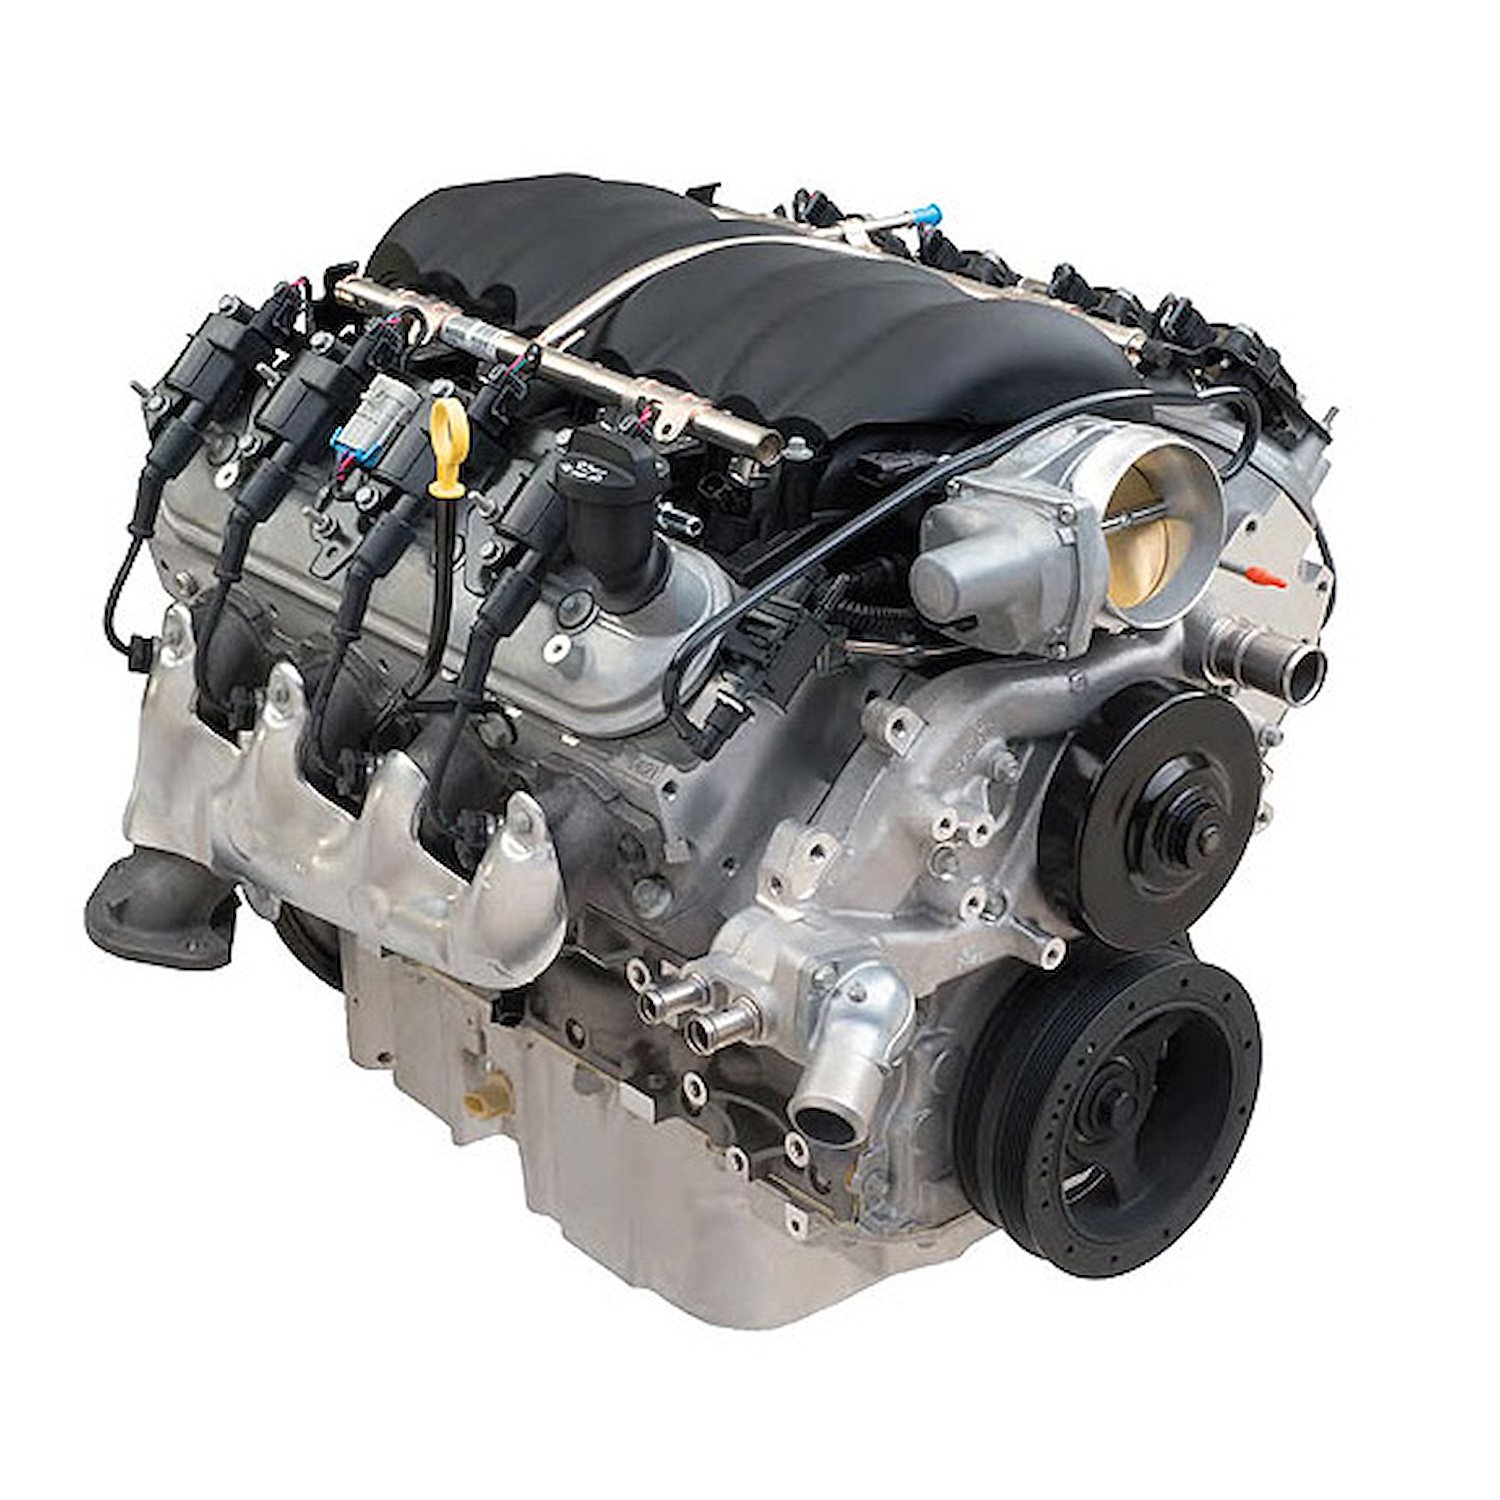 LS376/525 6.2L LS3 Engine w/ Aluminum Heads 525 HP @ 6,200 RPM